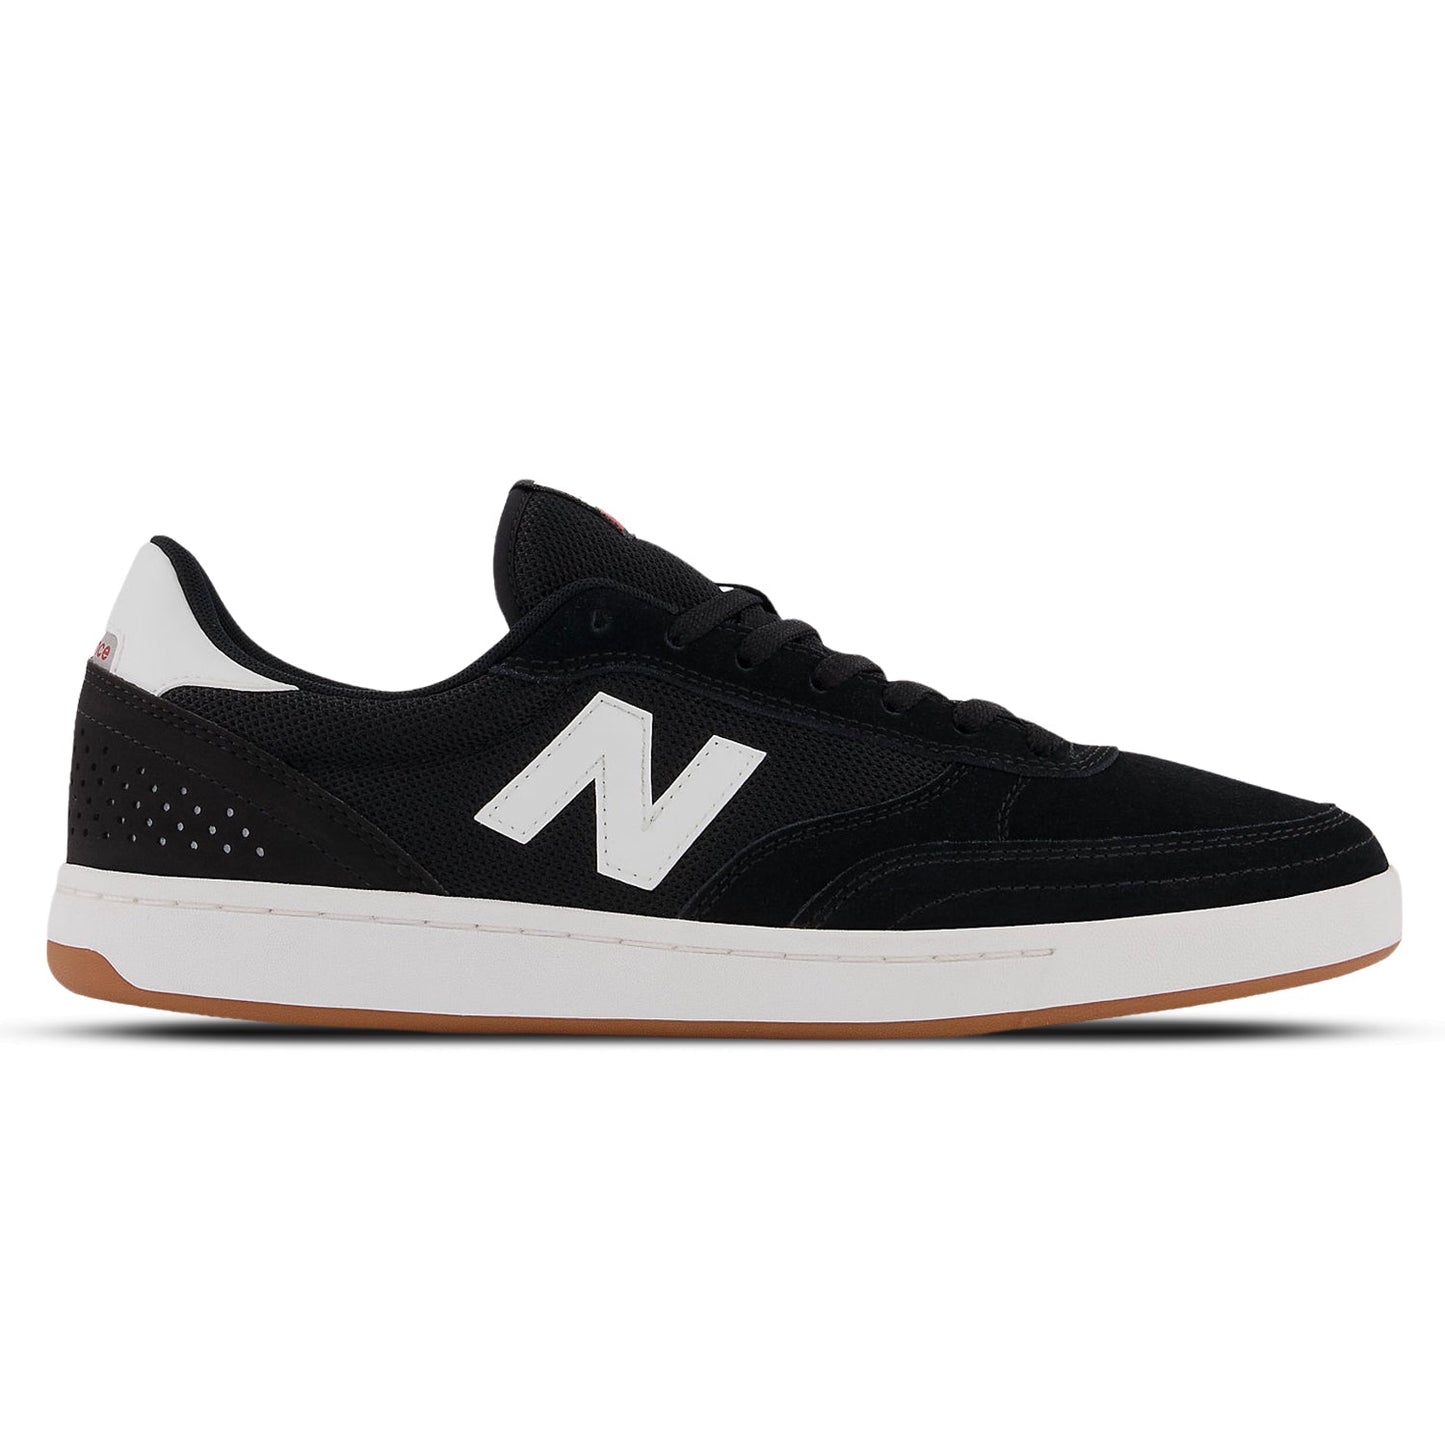 New Balance Numeric 440 Shoes Black / White